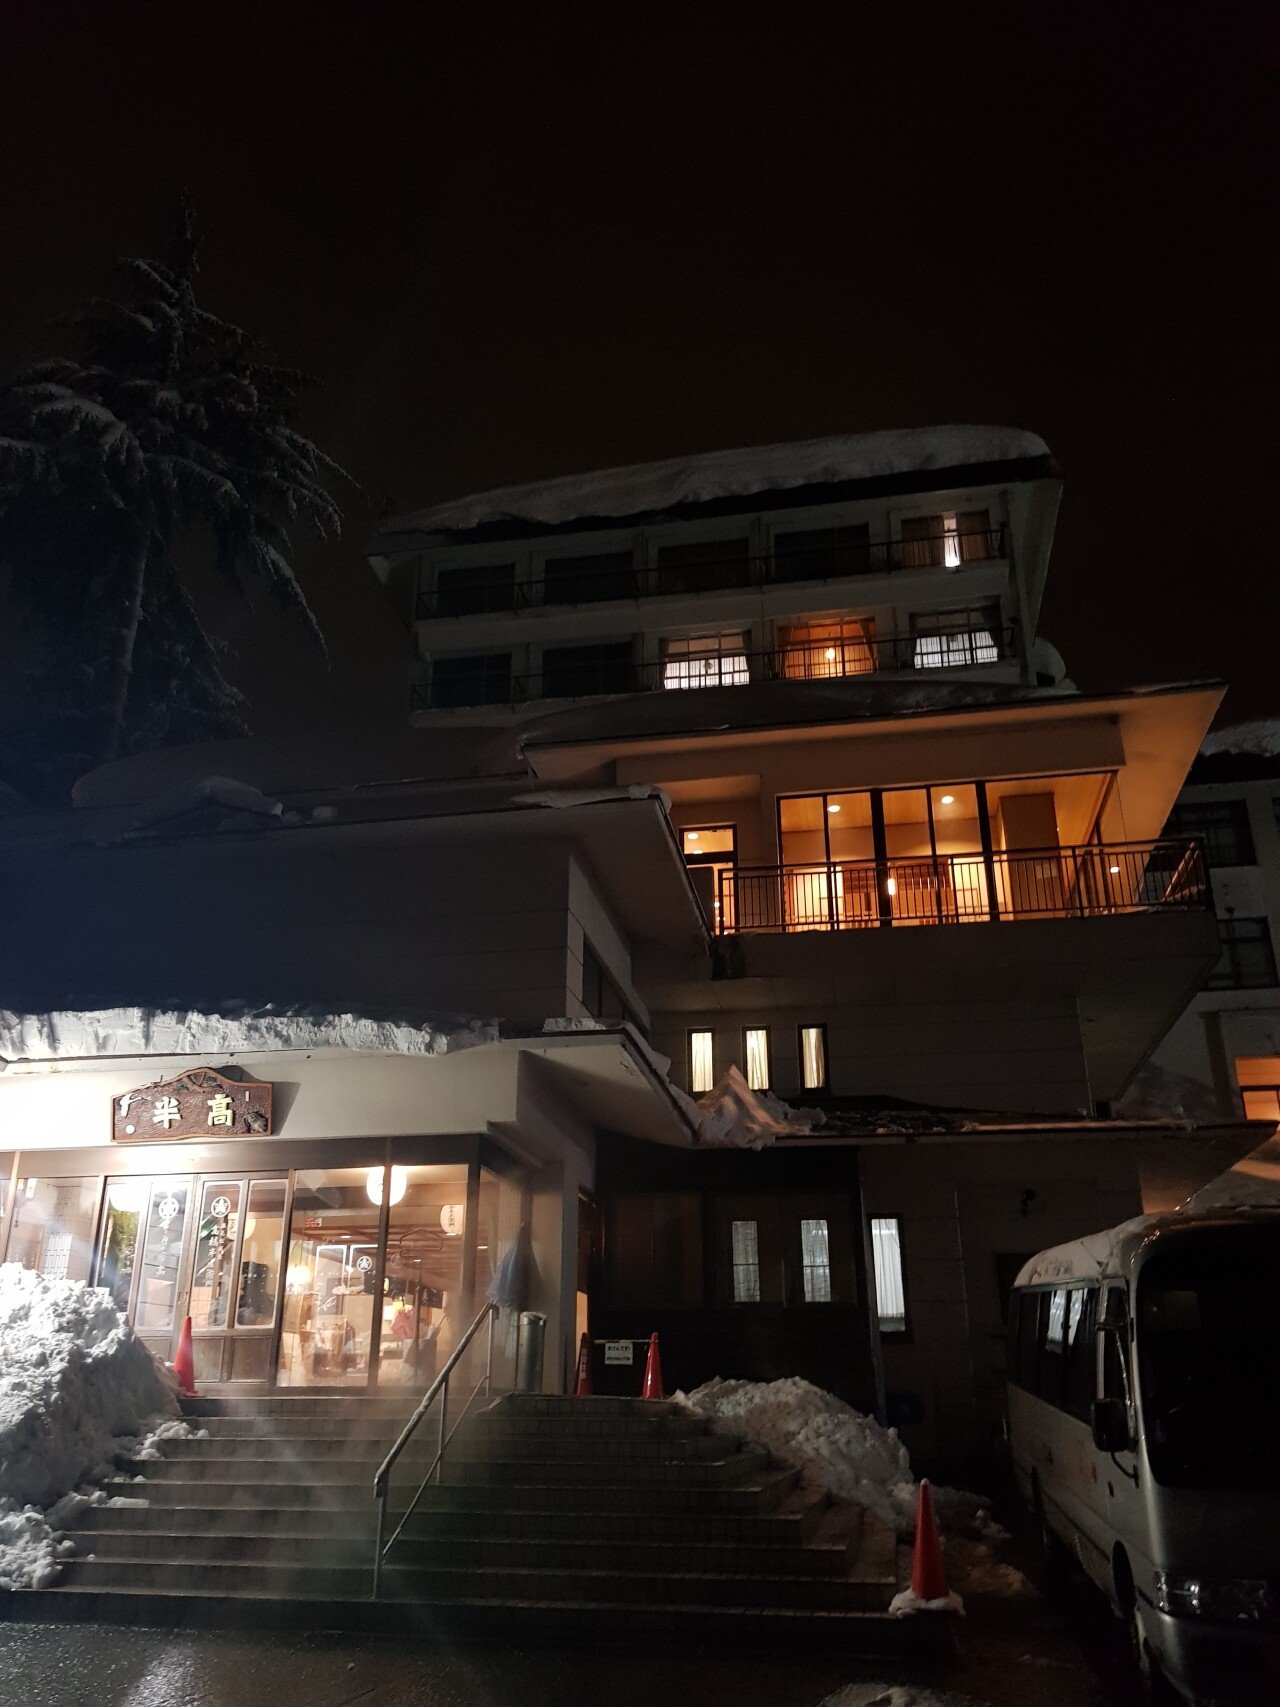 20190129_181437.jpg 눈으로 덮인 겨울 니가타&나가노 여행기(1) (스압?)